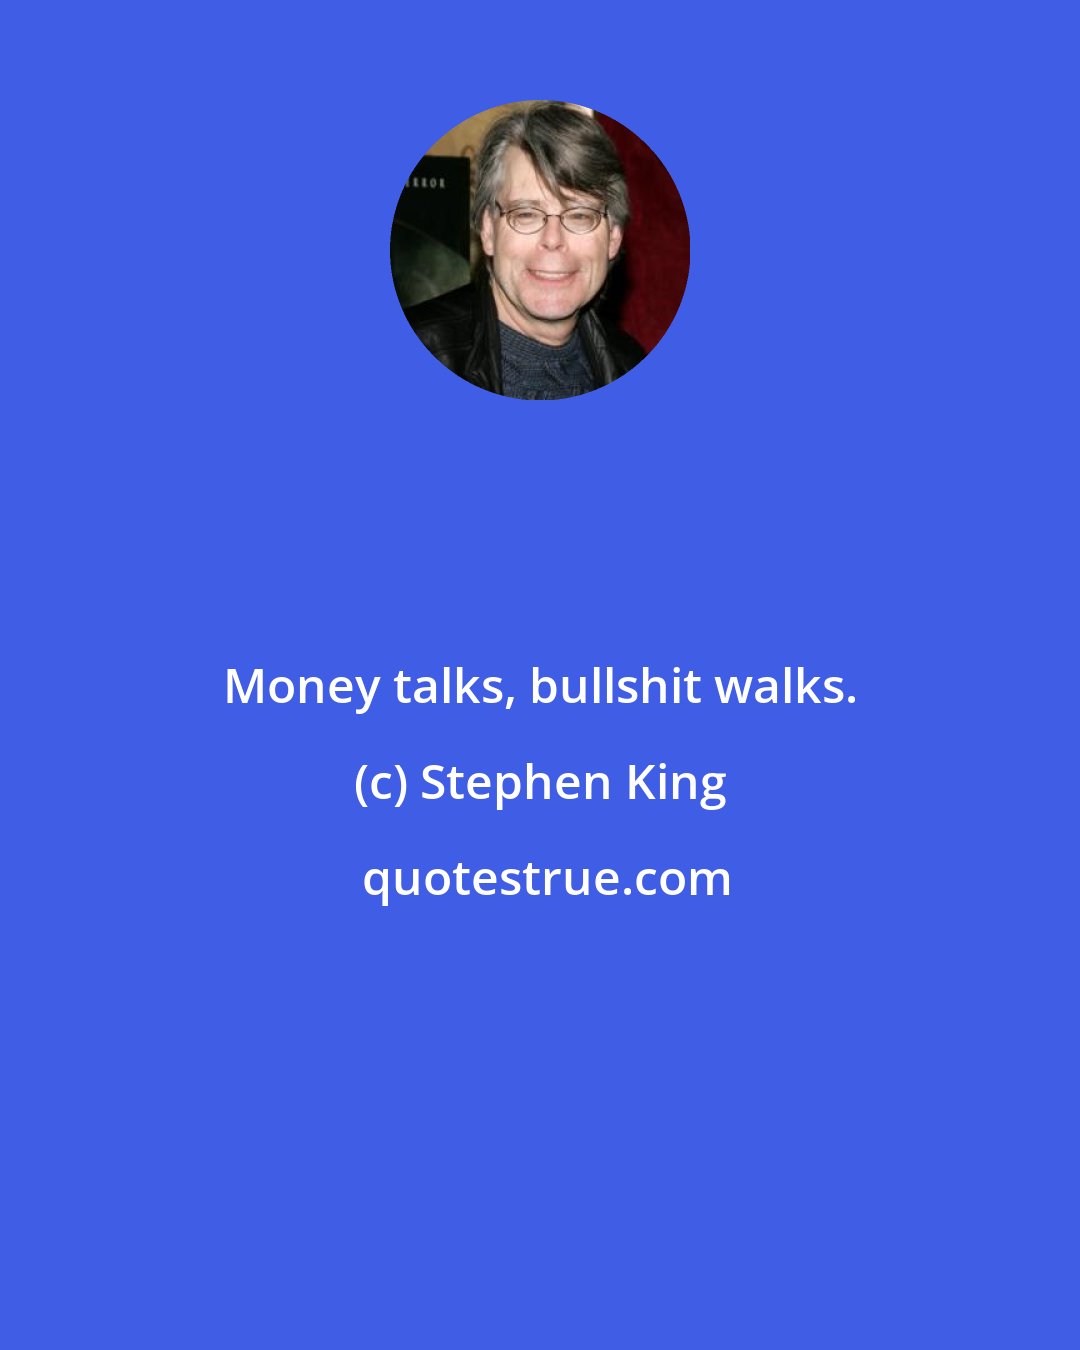 Stephen King: Money talks, bullshit walks.